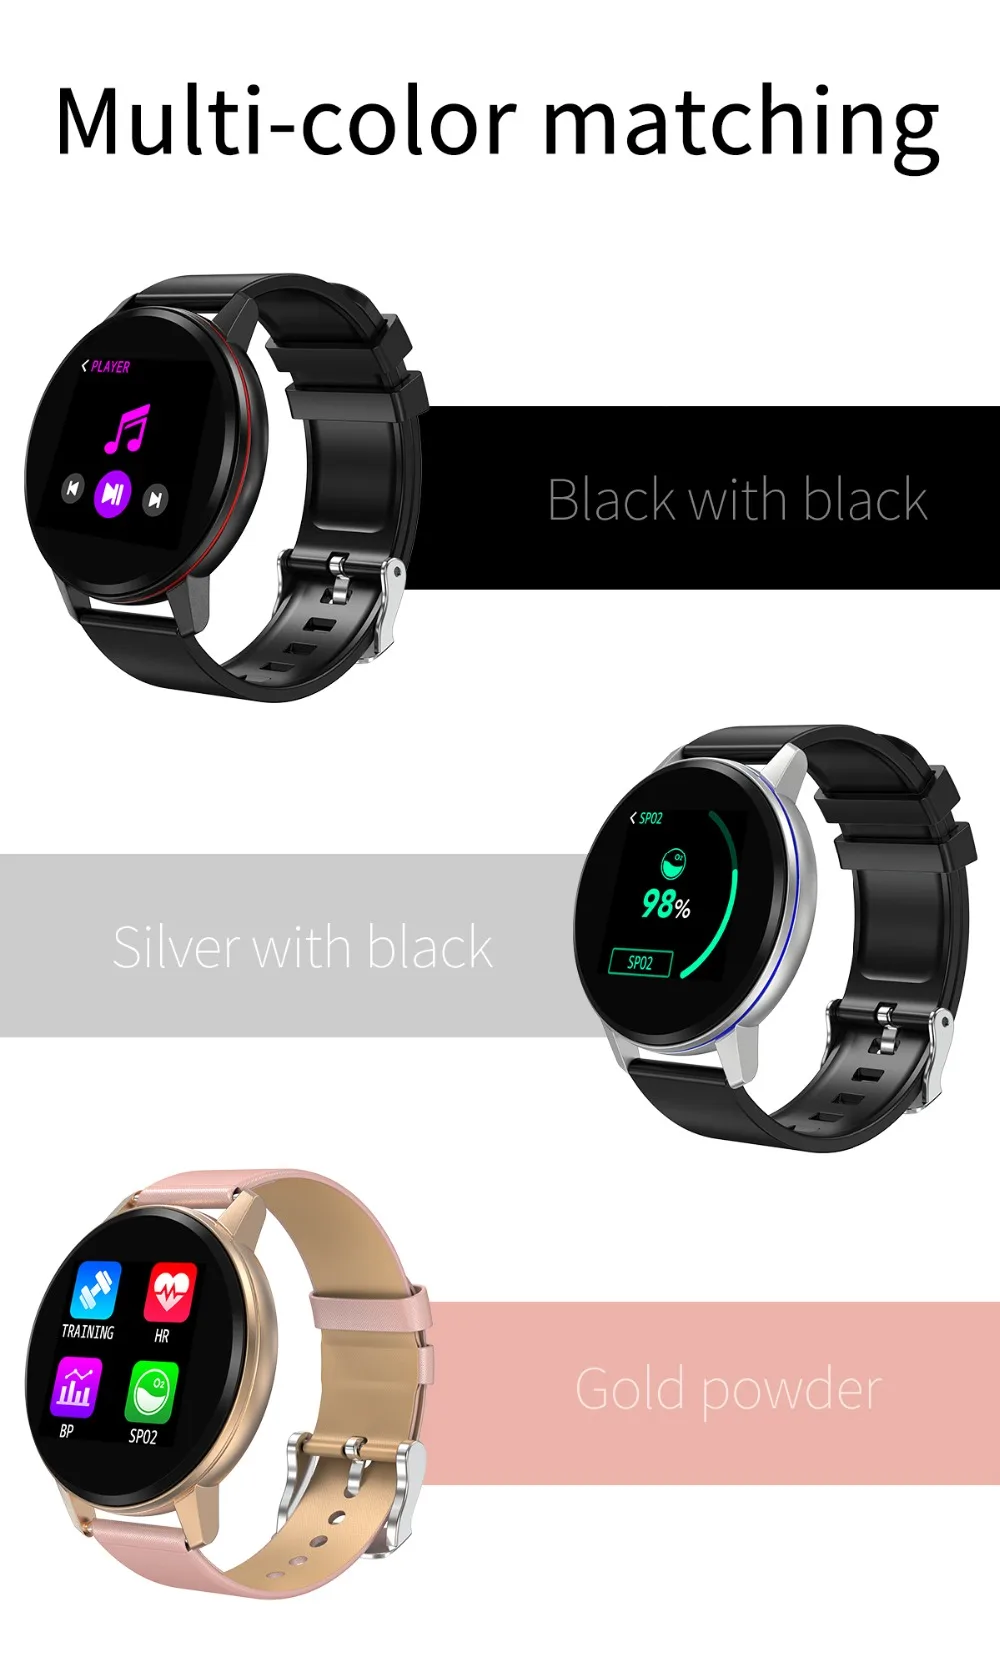 Умные часы S01, водонепроницаемые, IP67, для измерения артериального давления, спортивные, умные часы, умный детектор сердечного ритма, браслет для Android, Apple, IOS